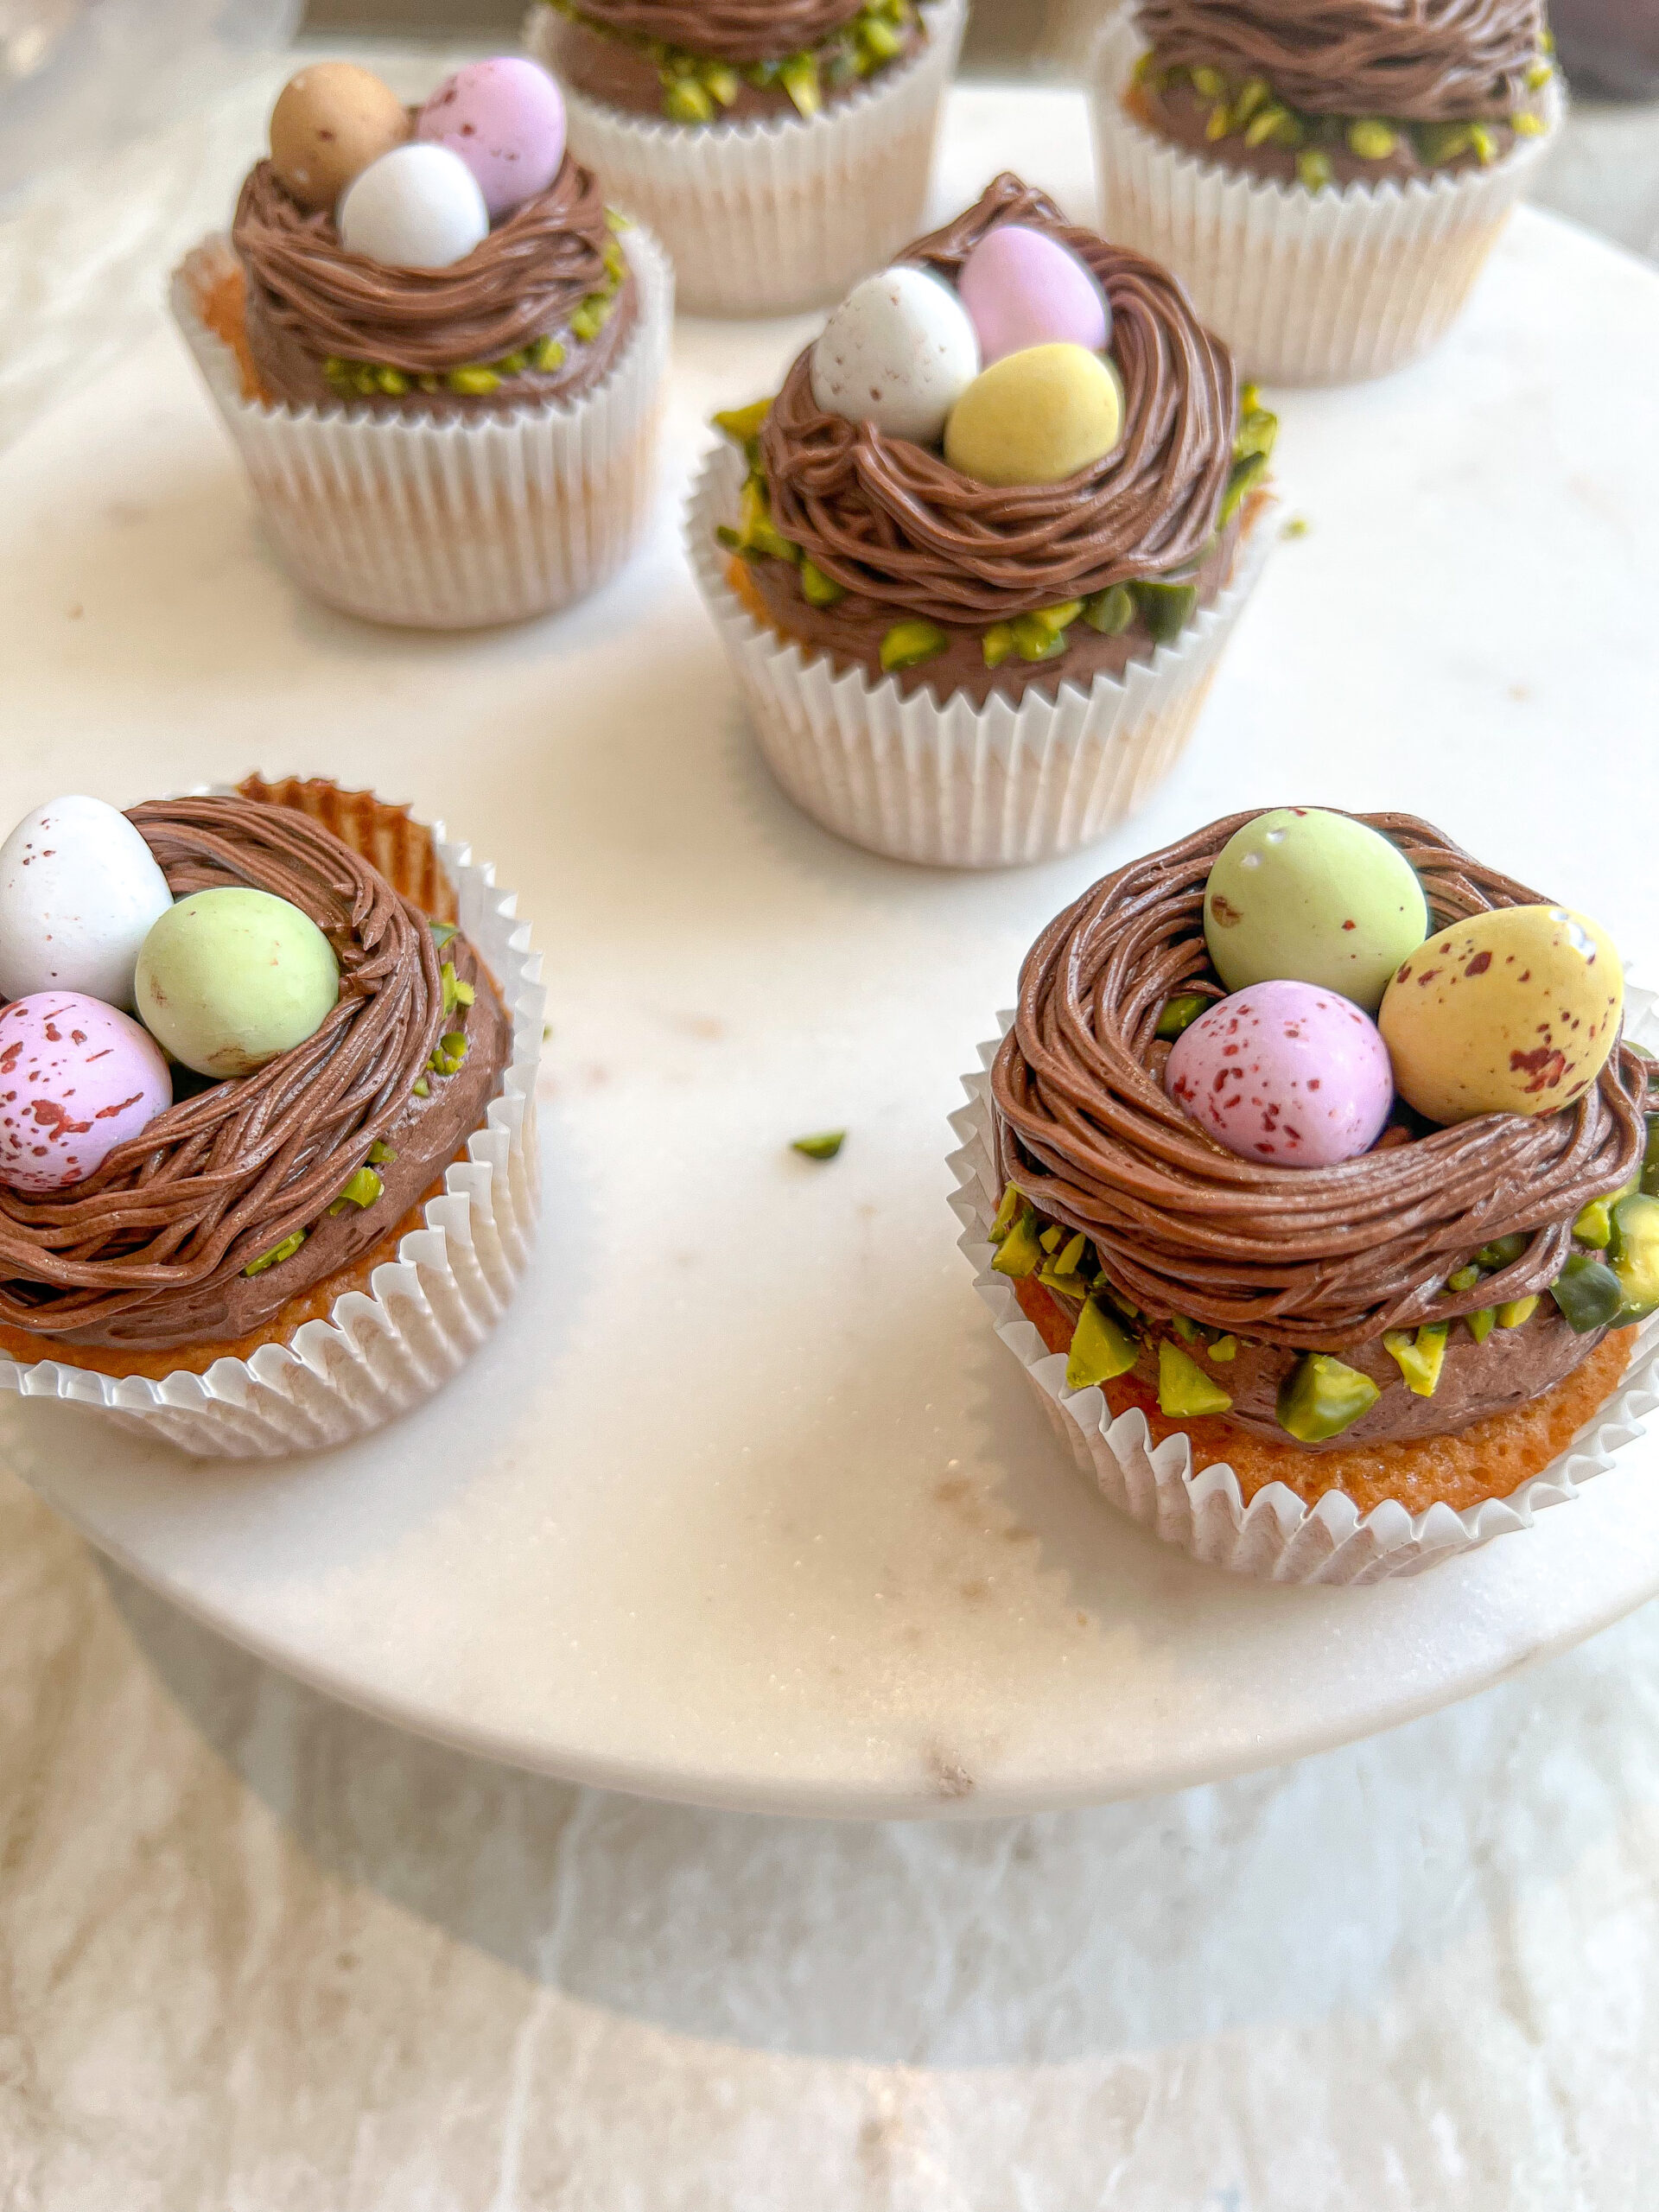 Påske cupcakes - Skønne makron muffins med chokolade frosting • I Koekkenet